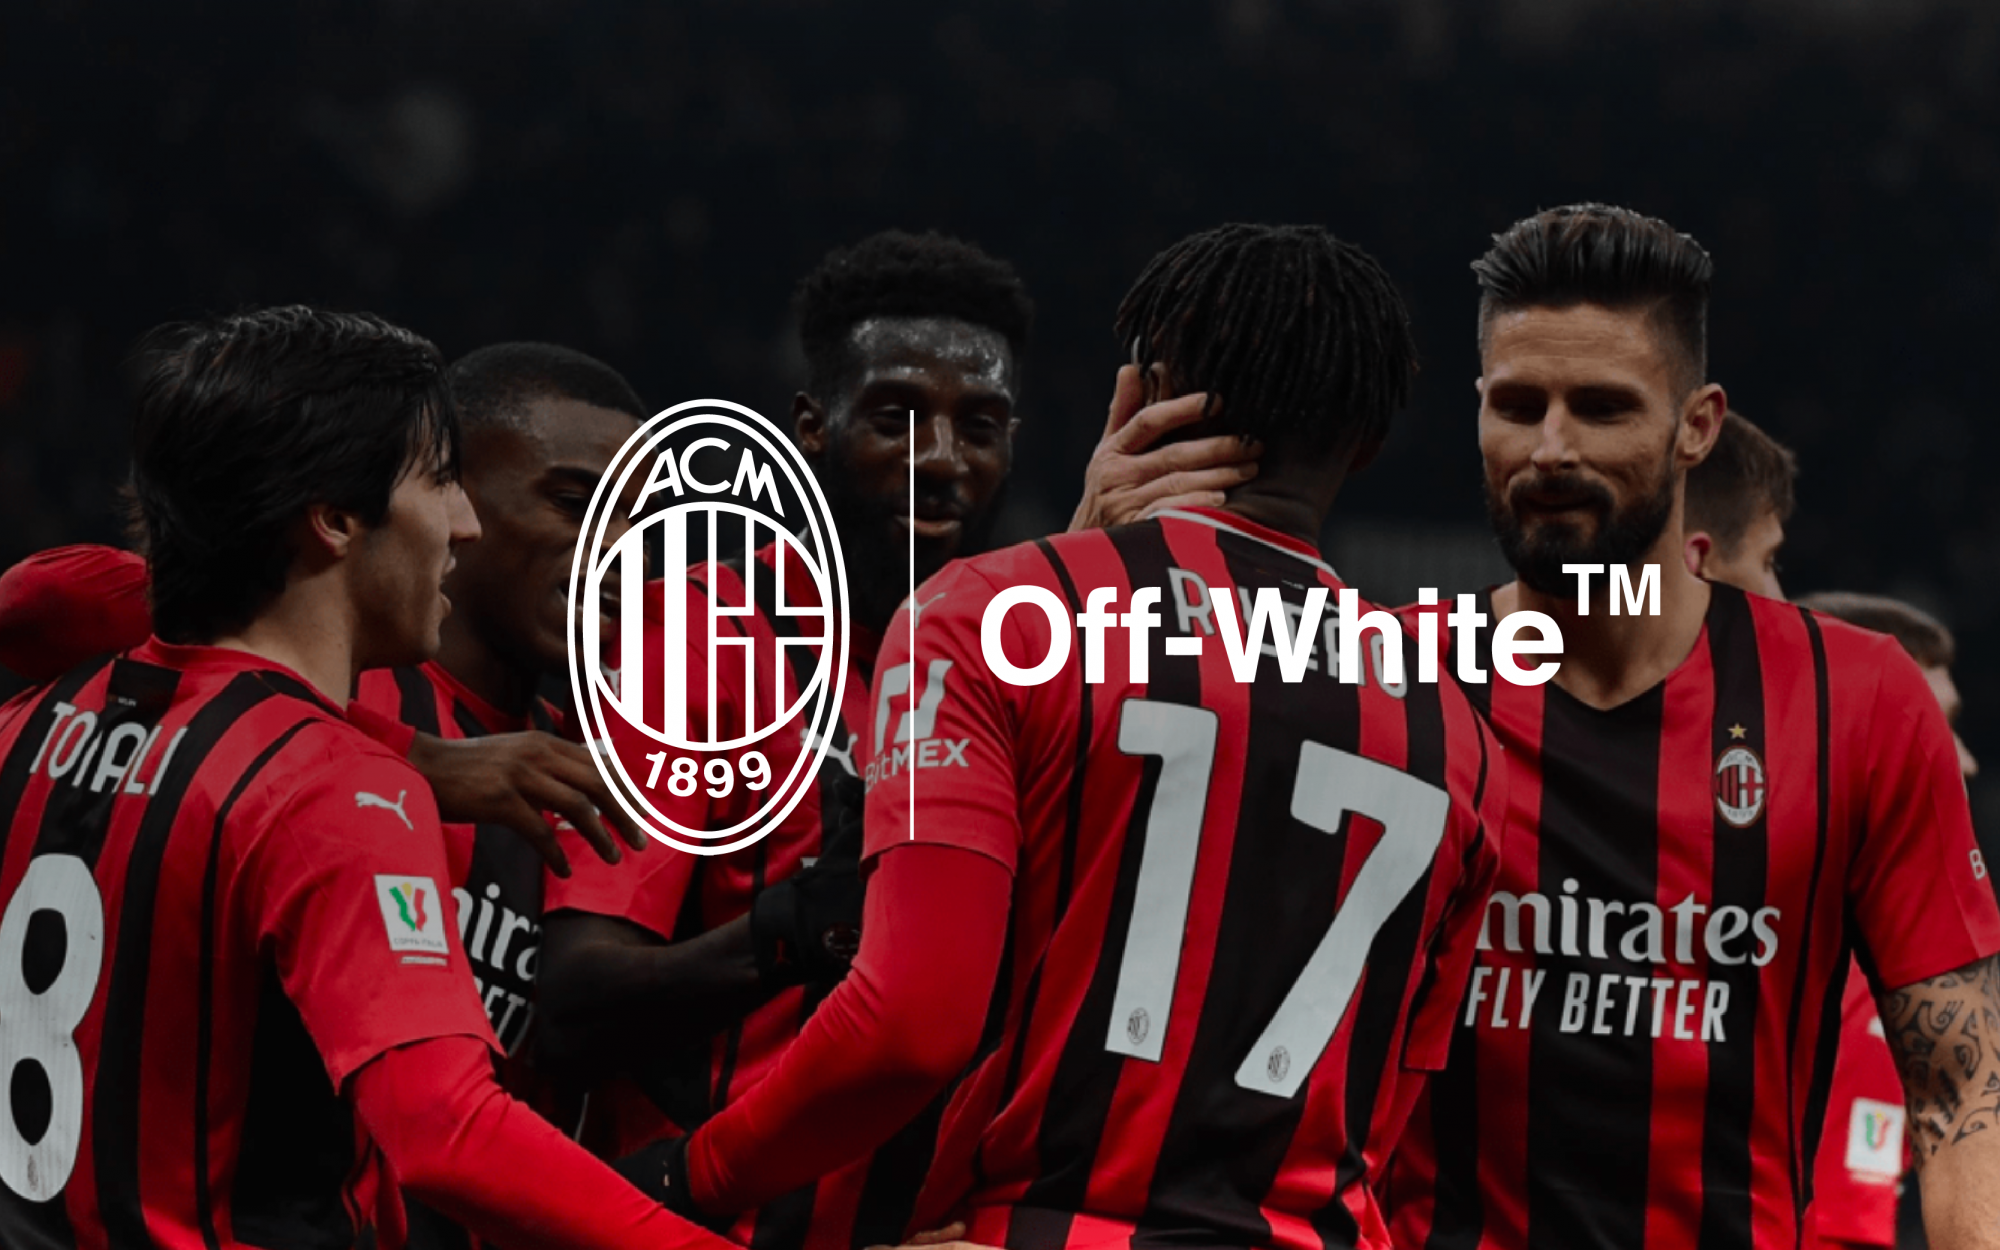 Off-White x AC Milan Partnership